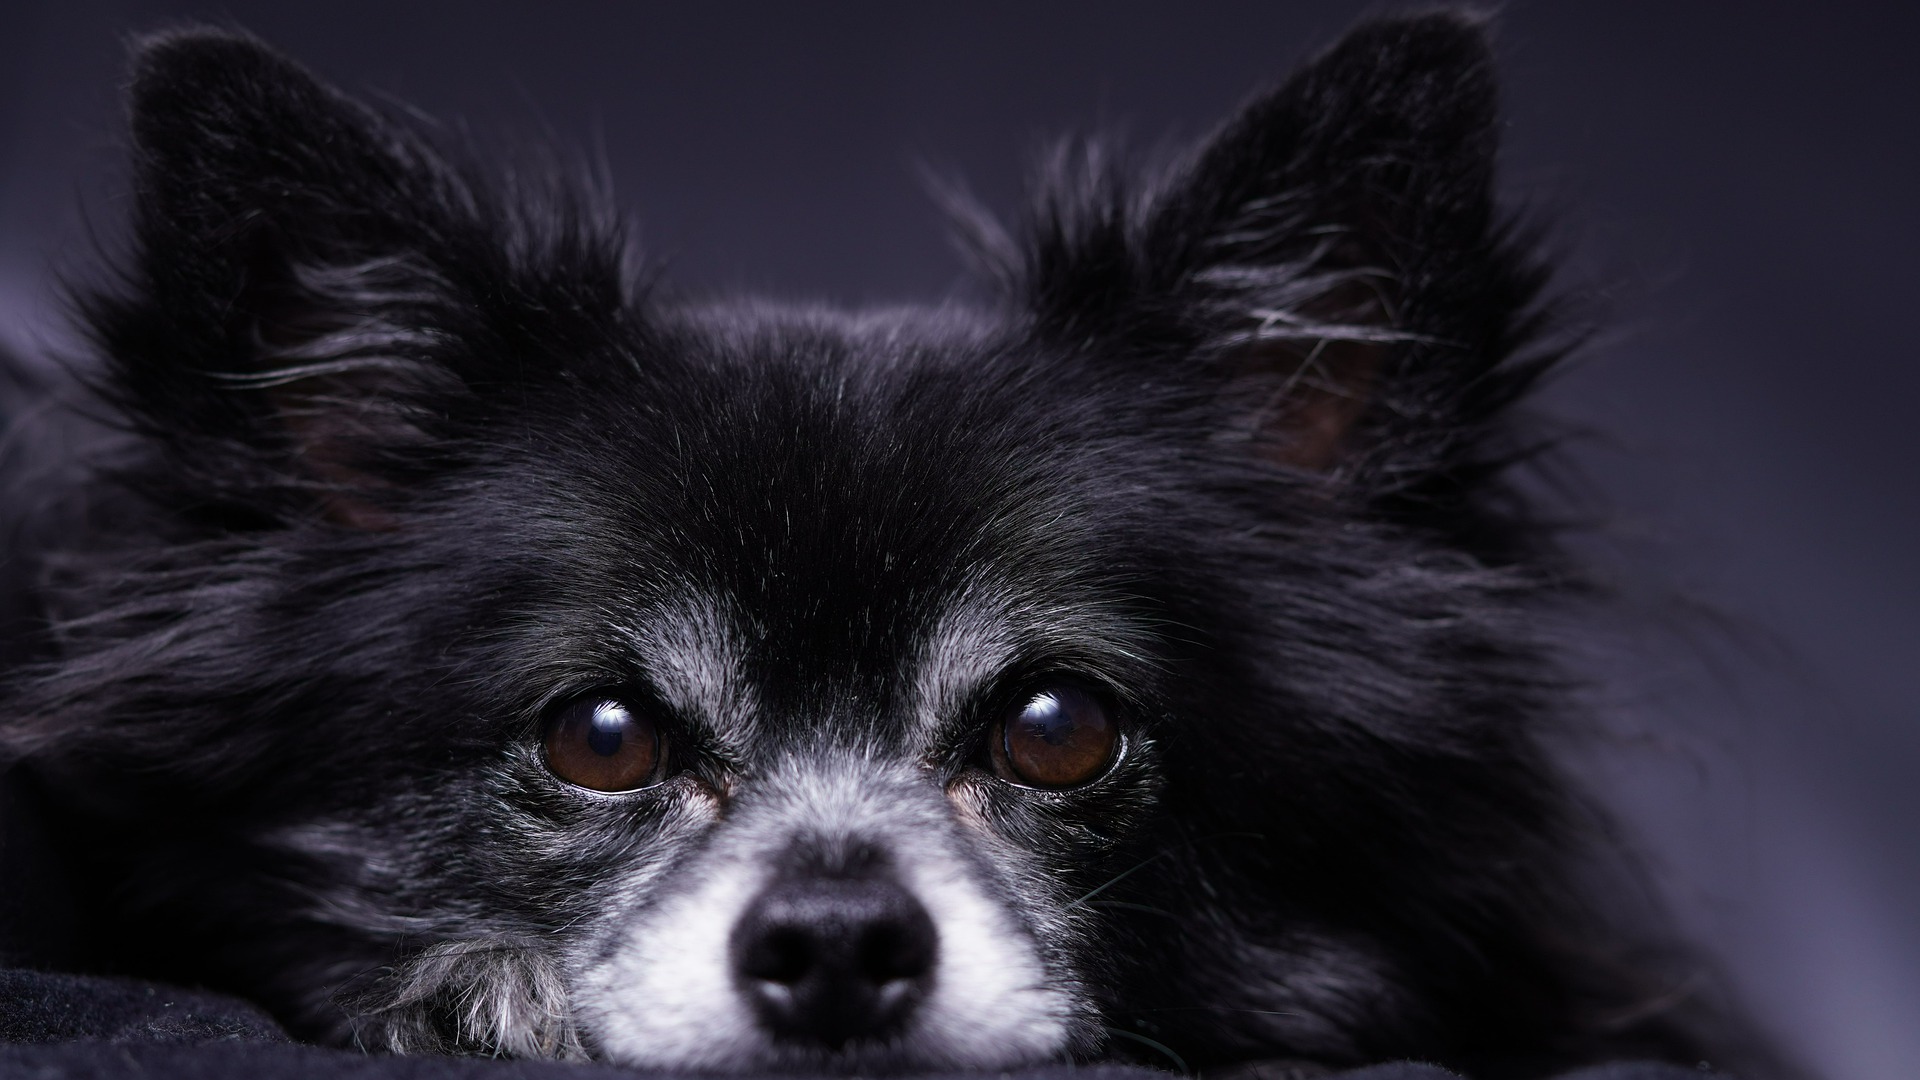 undtagelse Leeds Havn Køb Chihuahua | Find salgsklar hundehvalpe - Dyreportal.dk